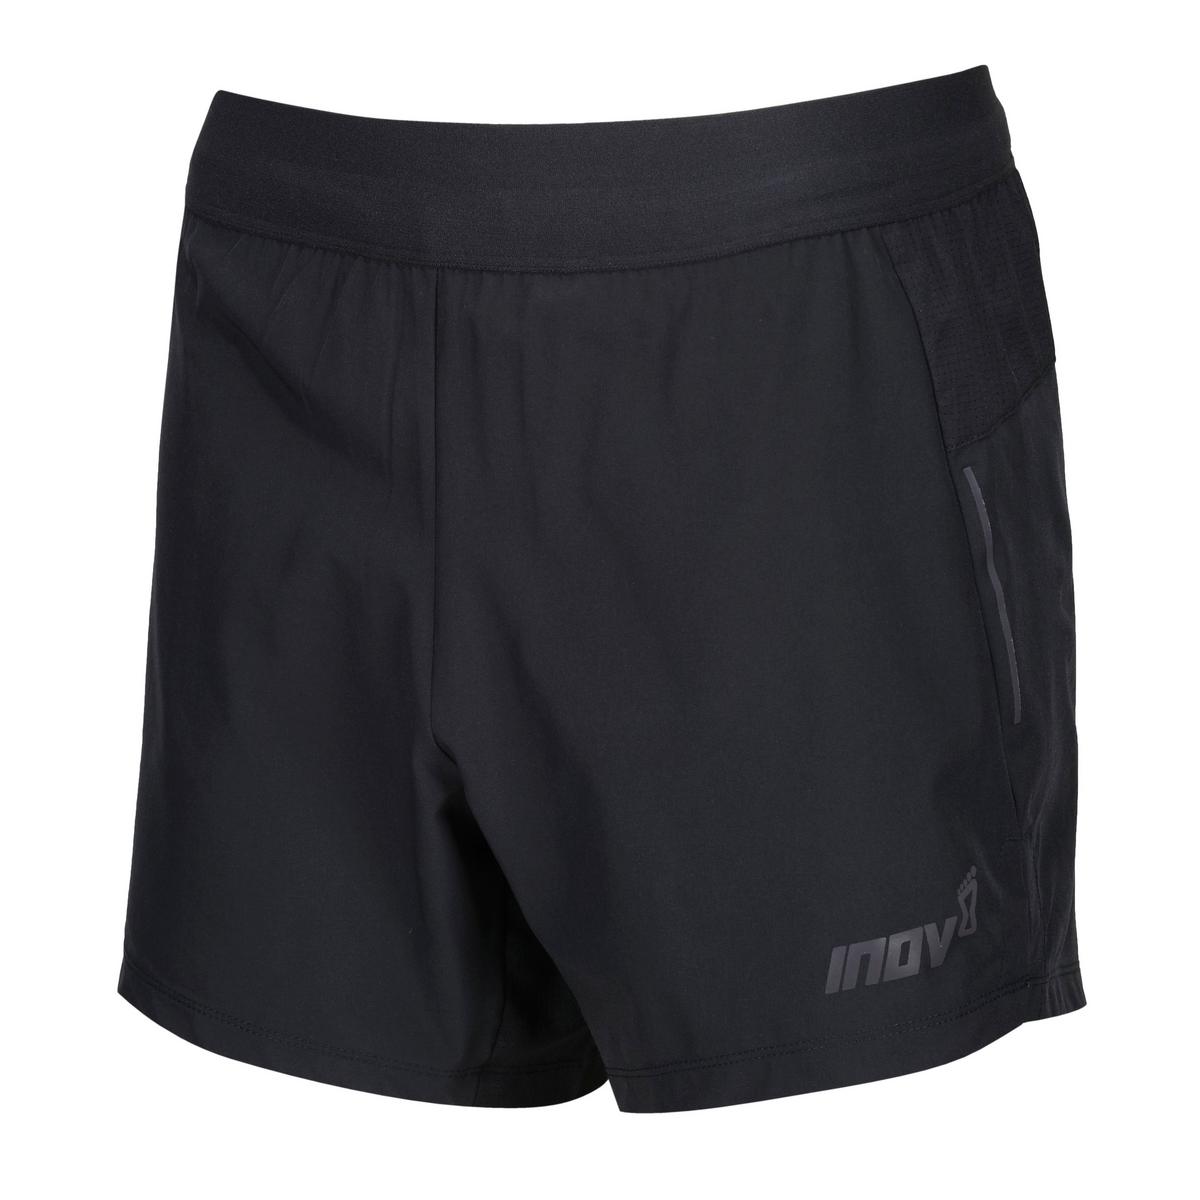 Inov-8 Men's Race Elite 5 Inch Shorts- Black